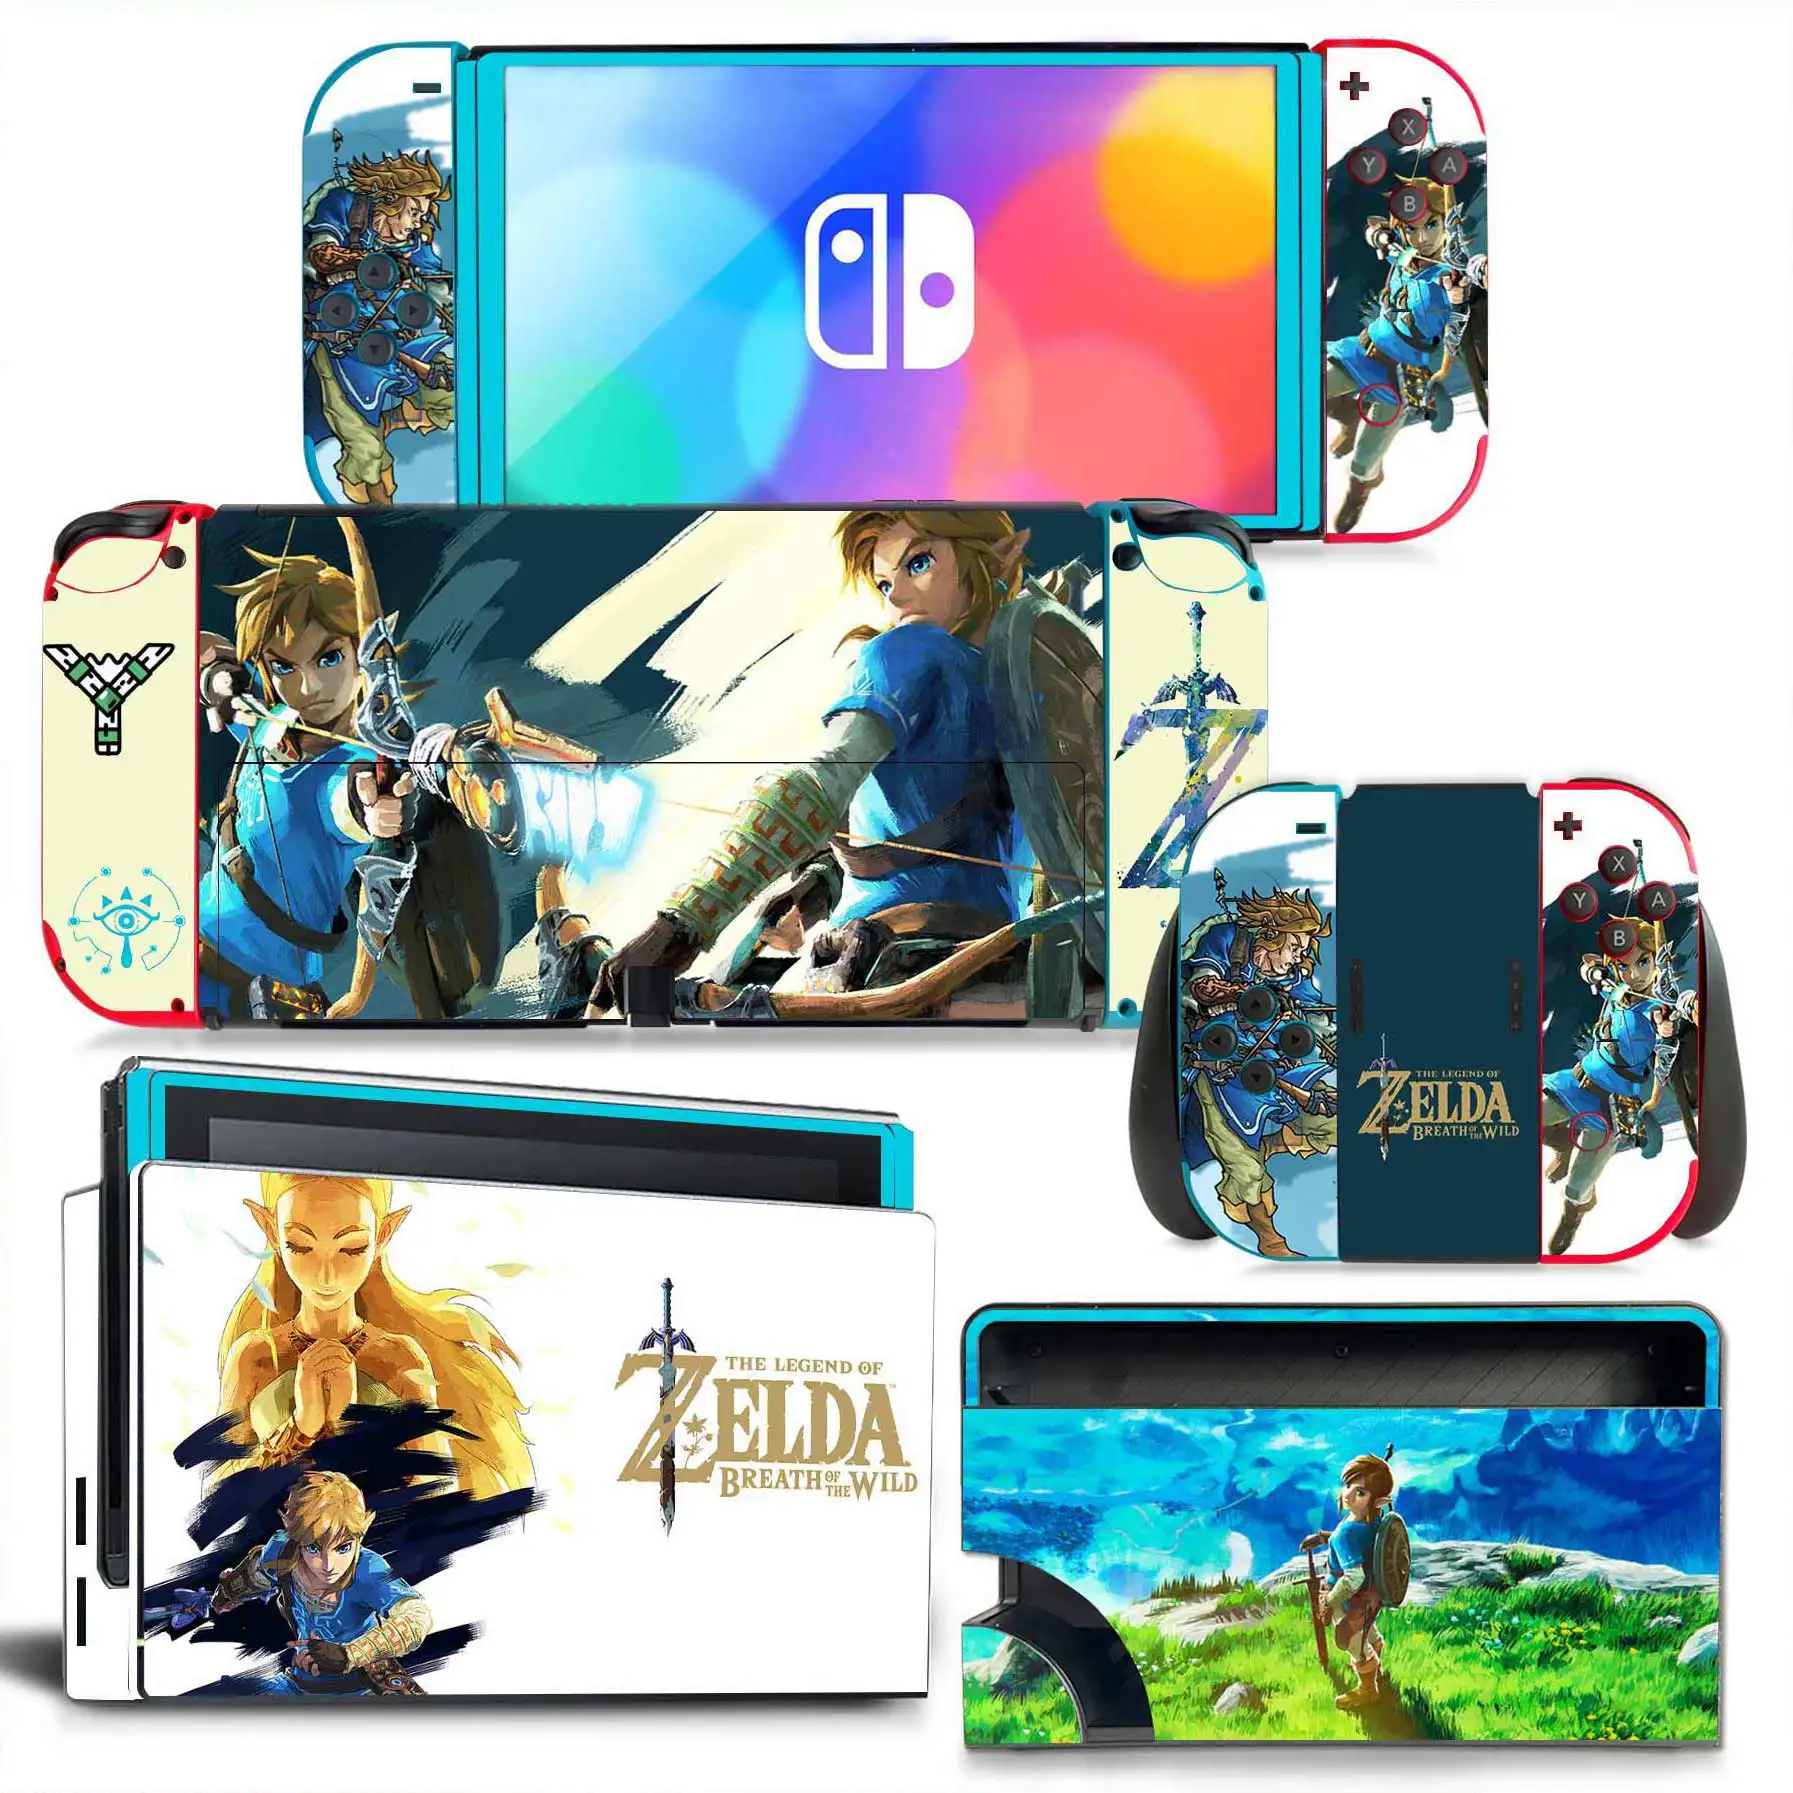 

Стильная виниловая наклейка Zelda, наклейка для консоли Nintendo Switch OLED, защитный аксессуар для игр NintendoSwitch OLED